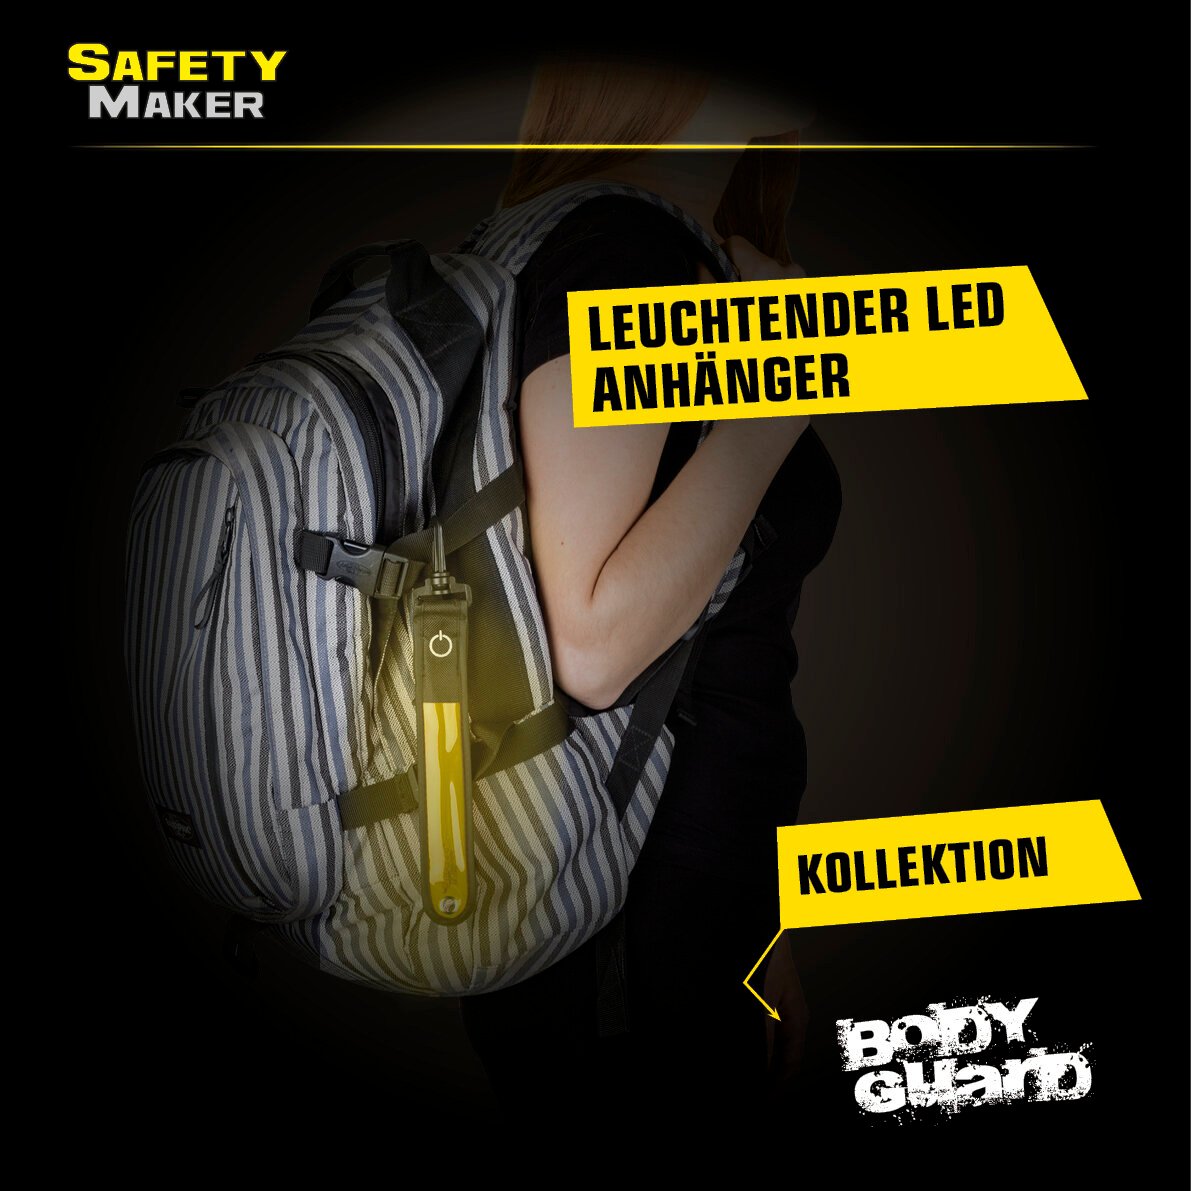 Twinkle LED Anhänger, Sicherheitsclip, Blinklicht gelb